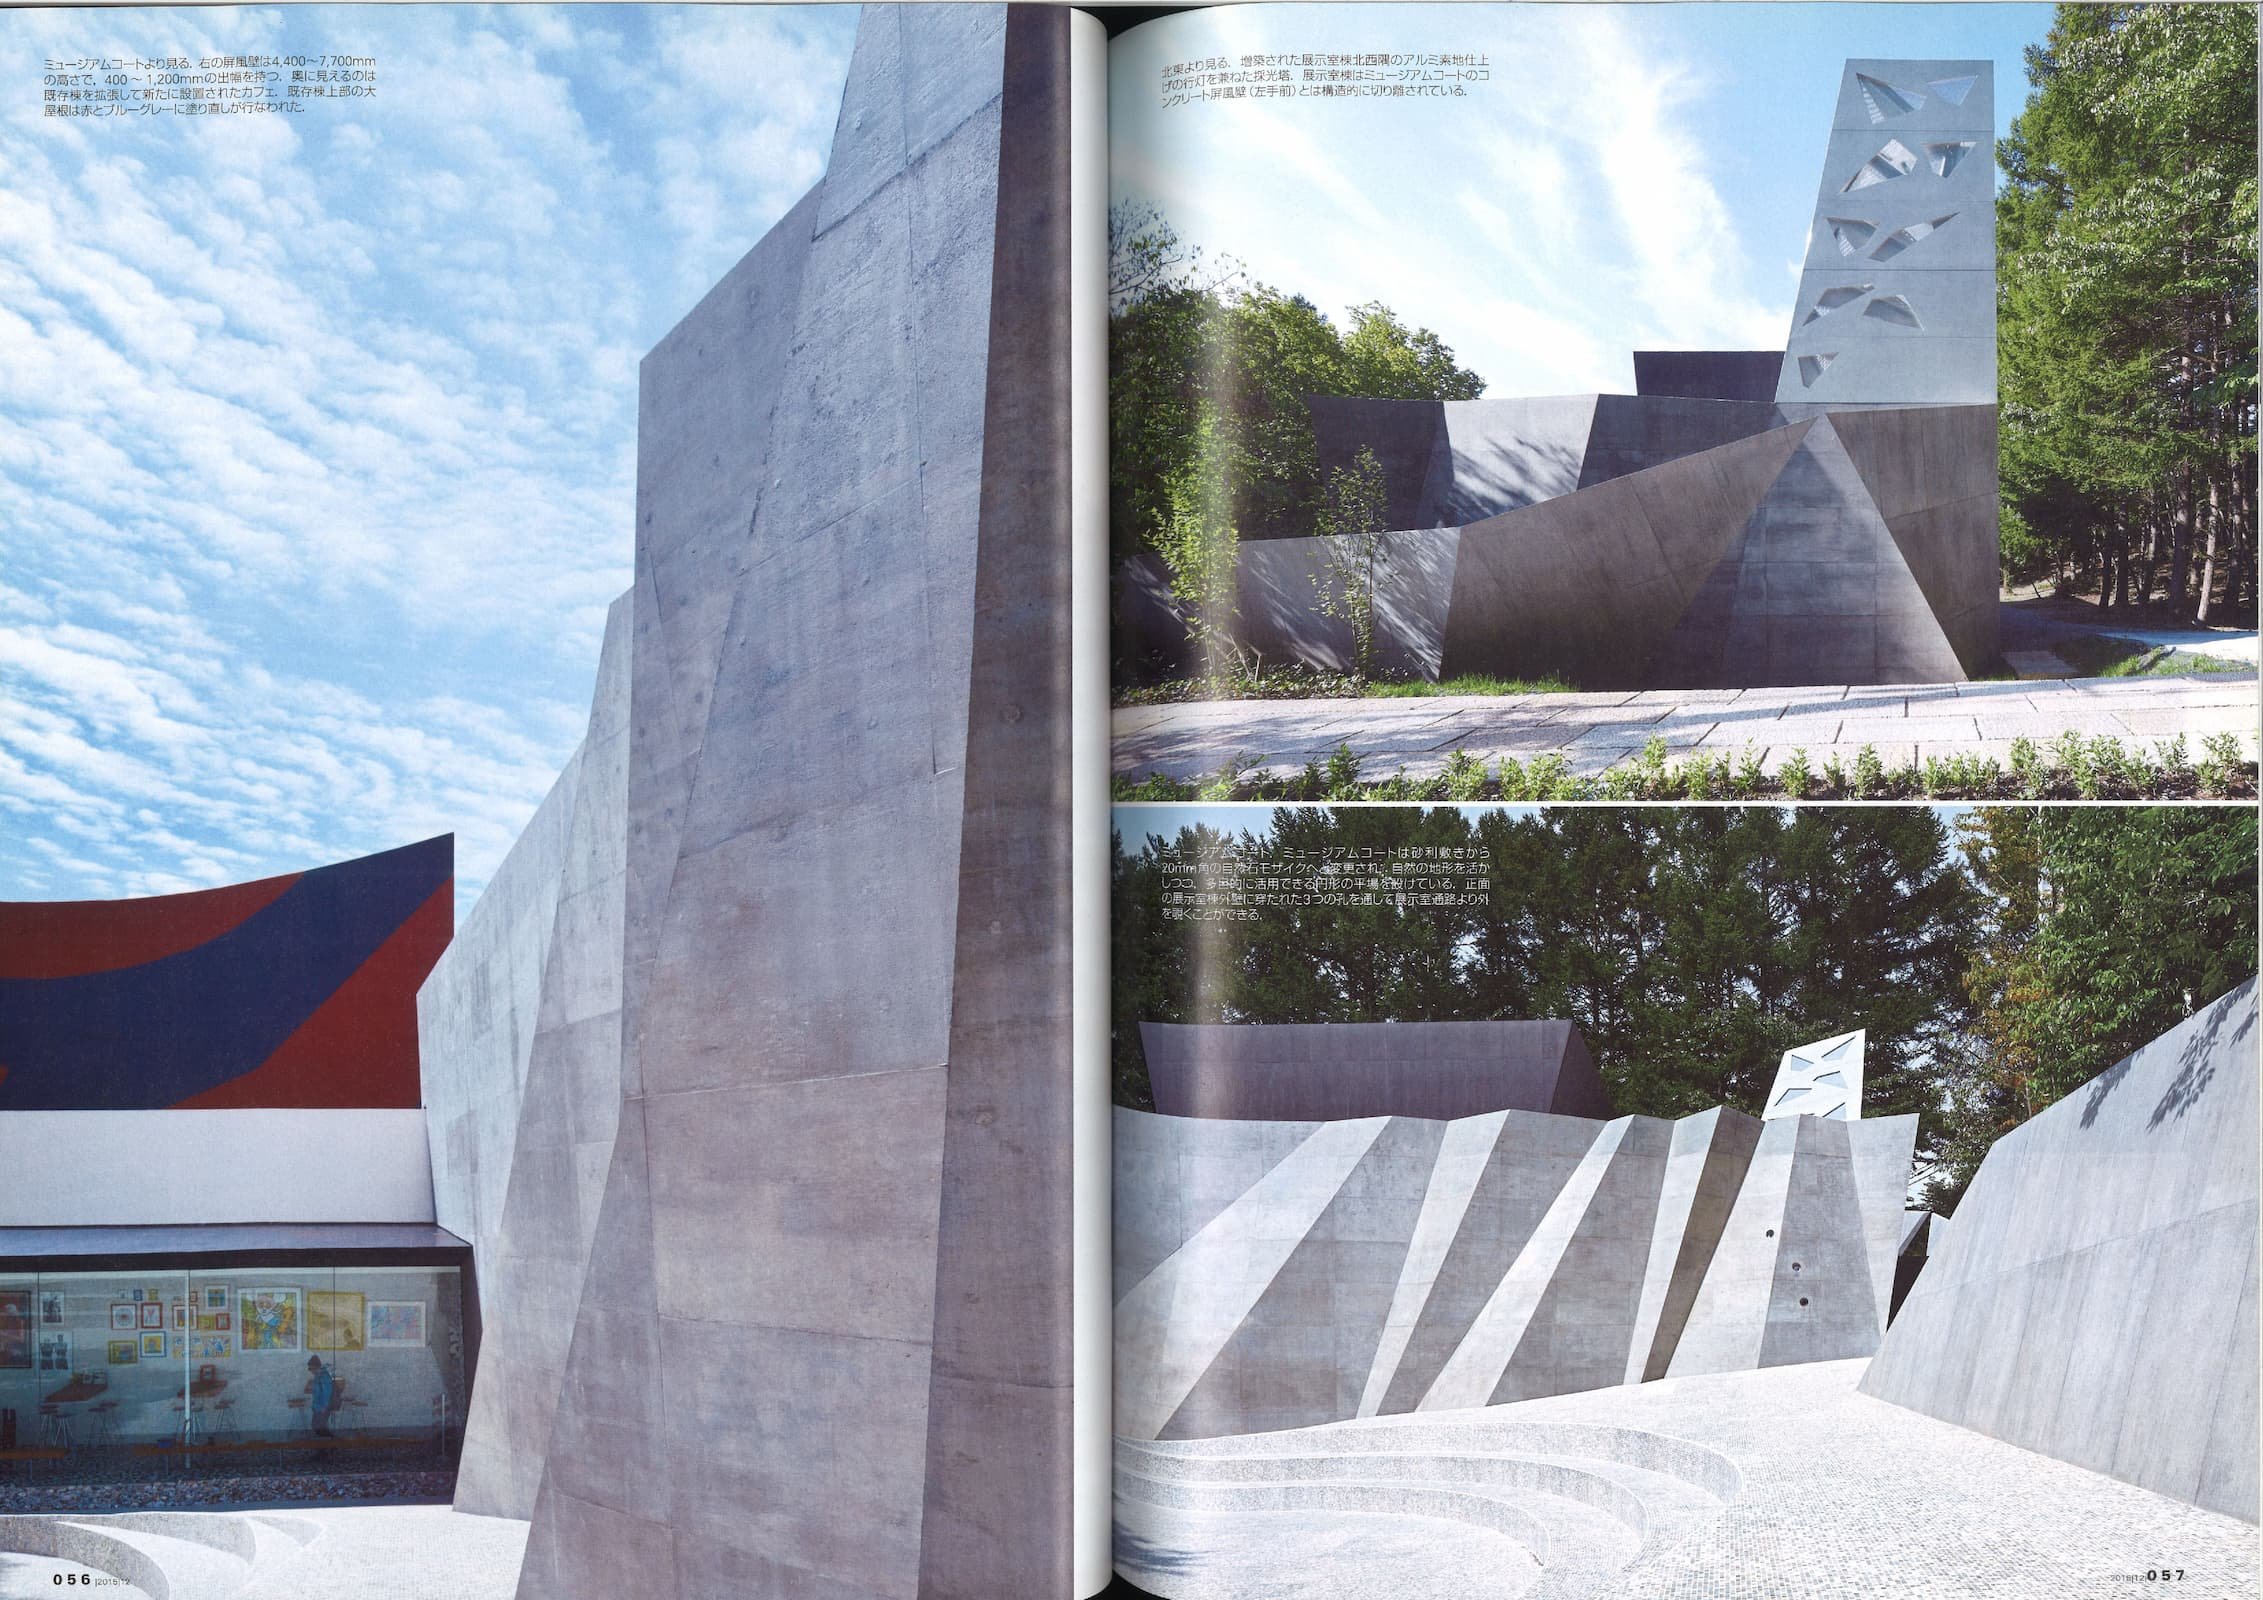 新建築 - New Architecture 90 - Nakamura Keith Haring Collection_Page_4.jpg